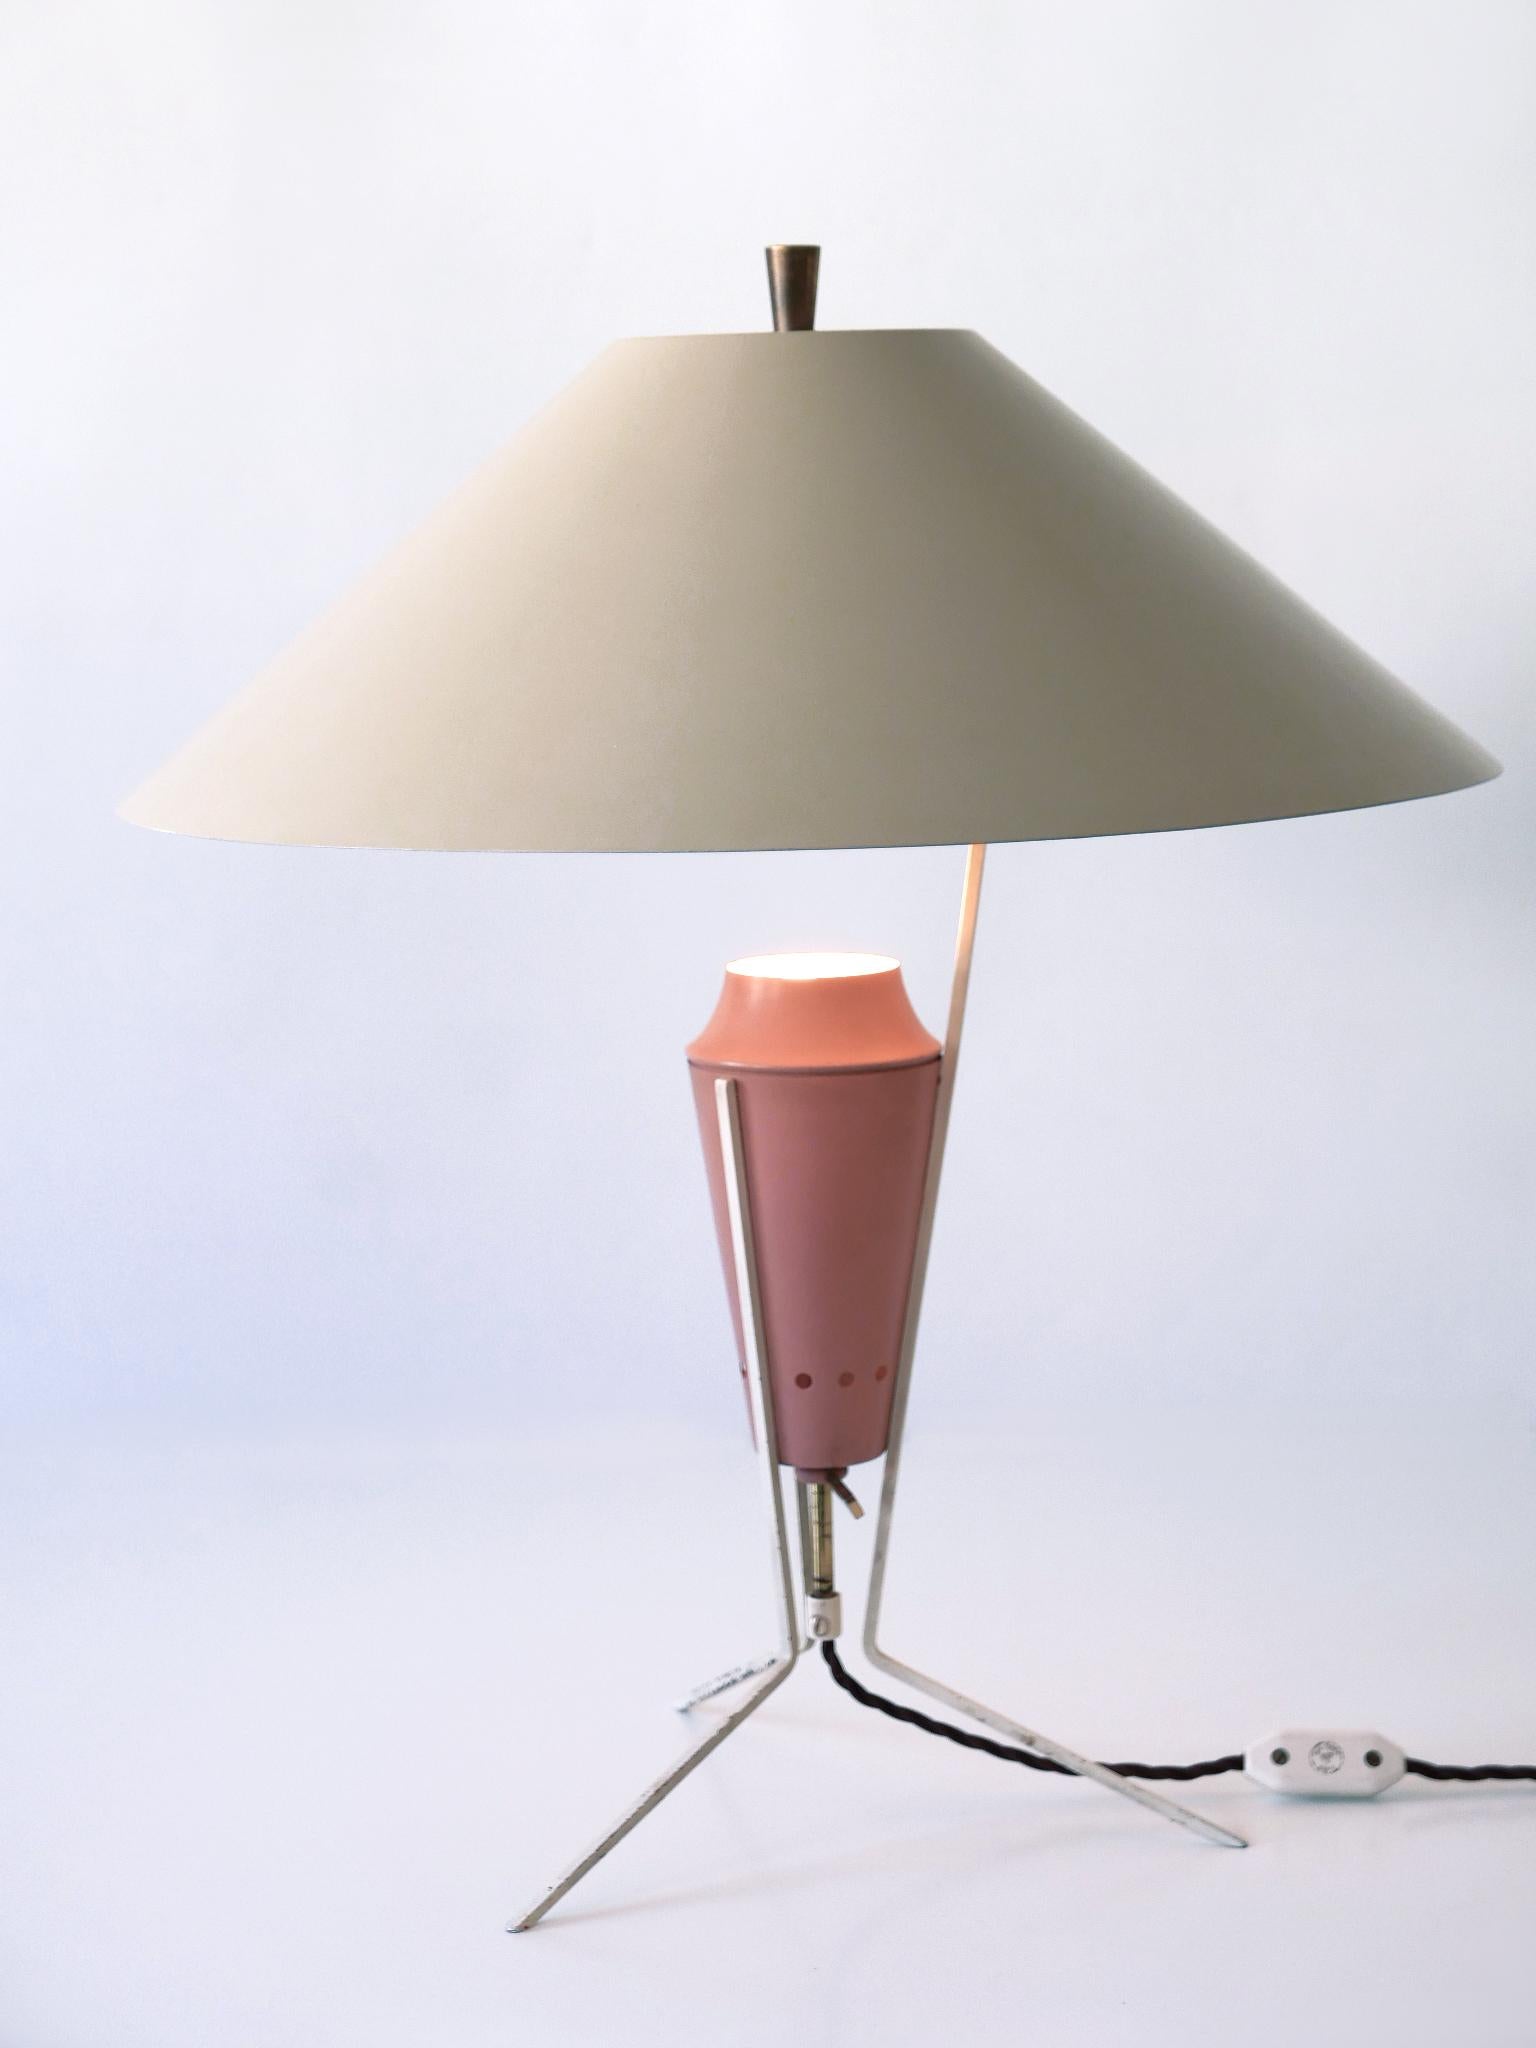 Äußerst seltene, große und sehr dekorative Tischlampe aus der Mitte des Jahrhunderts. Entworfen und hergestellt in Deutschland, 1950er Jahre.

Diese skulpturale Tischleuchte ist in Pastellfarben emailliertem Metall, Aluminium und Messing